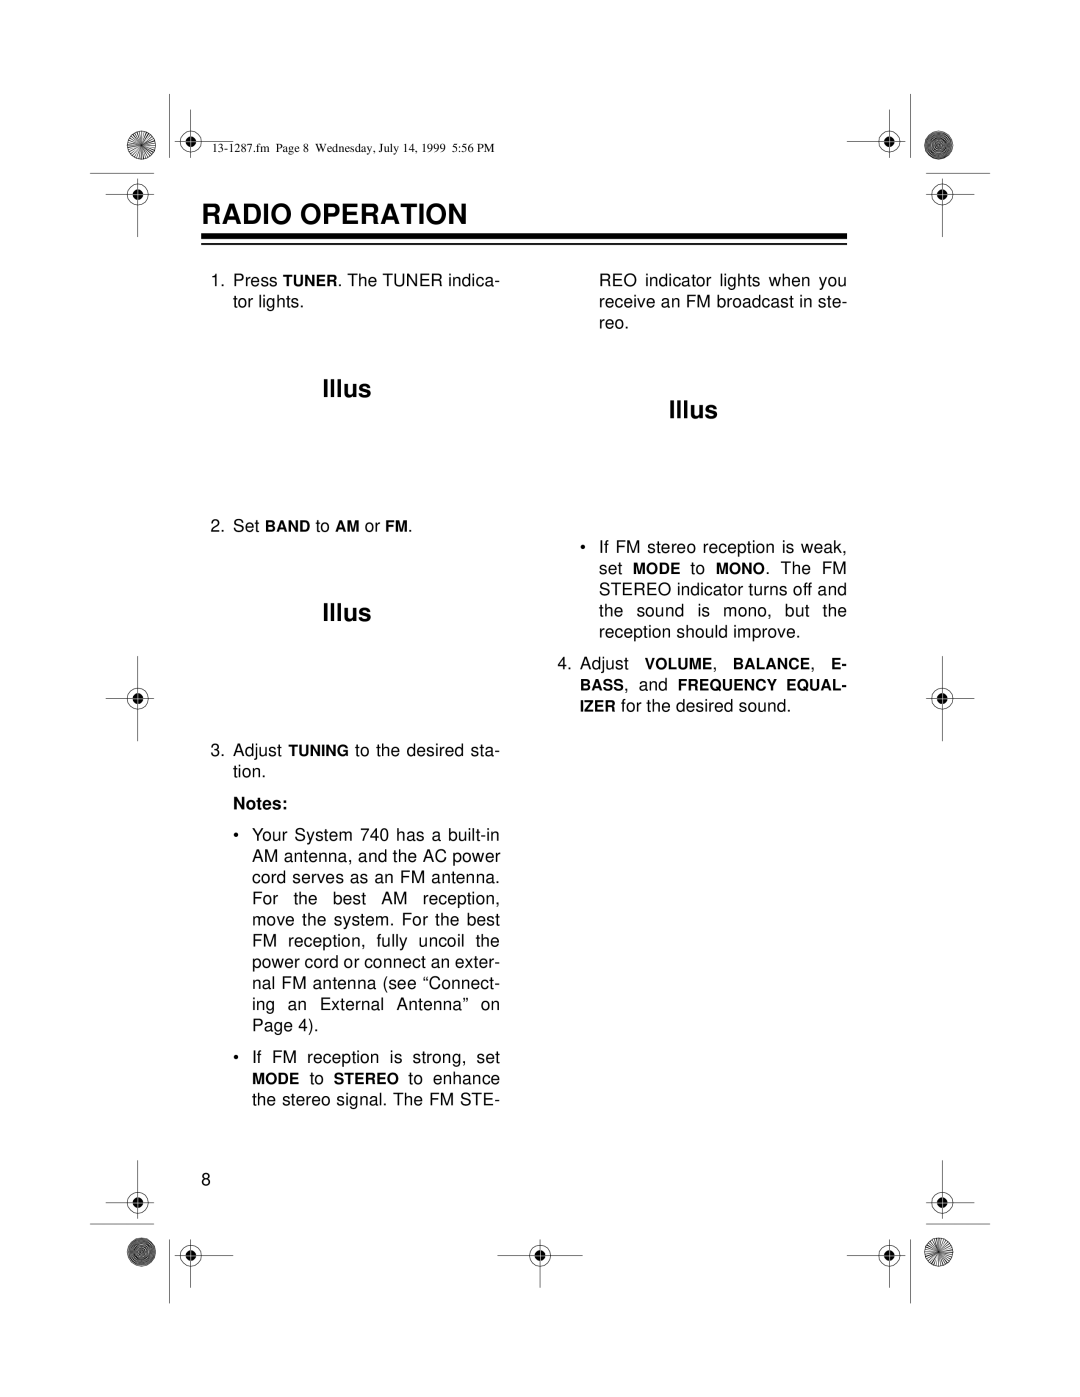 Optimus 740 owner manual Radio Operation, Illus Illus 